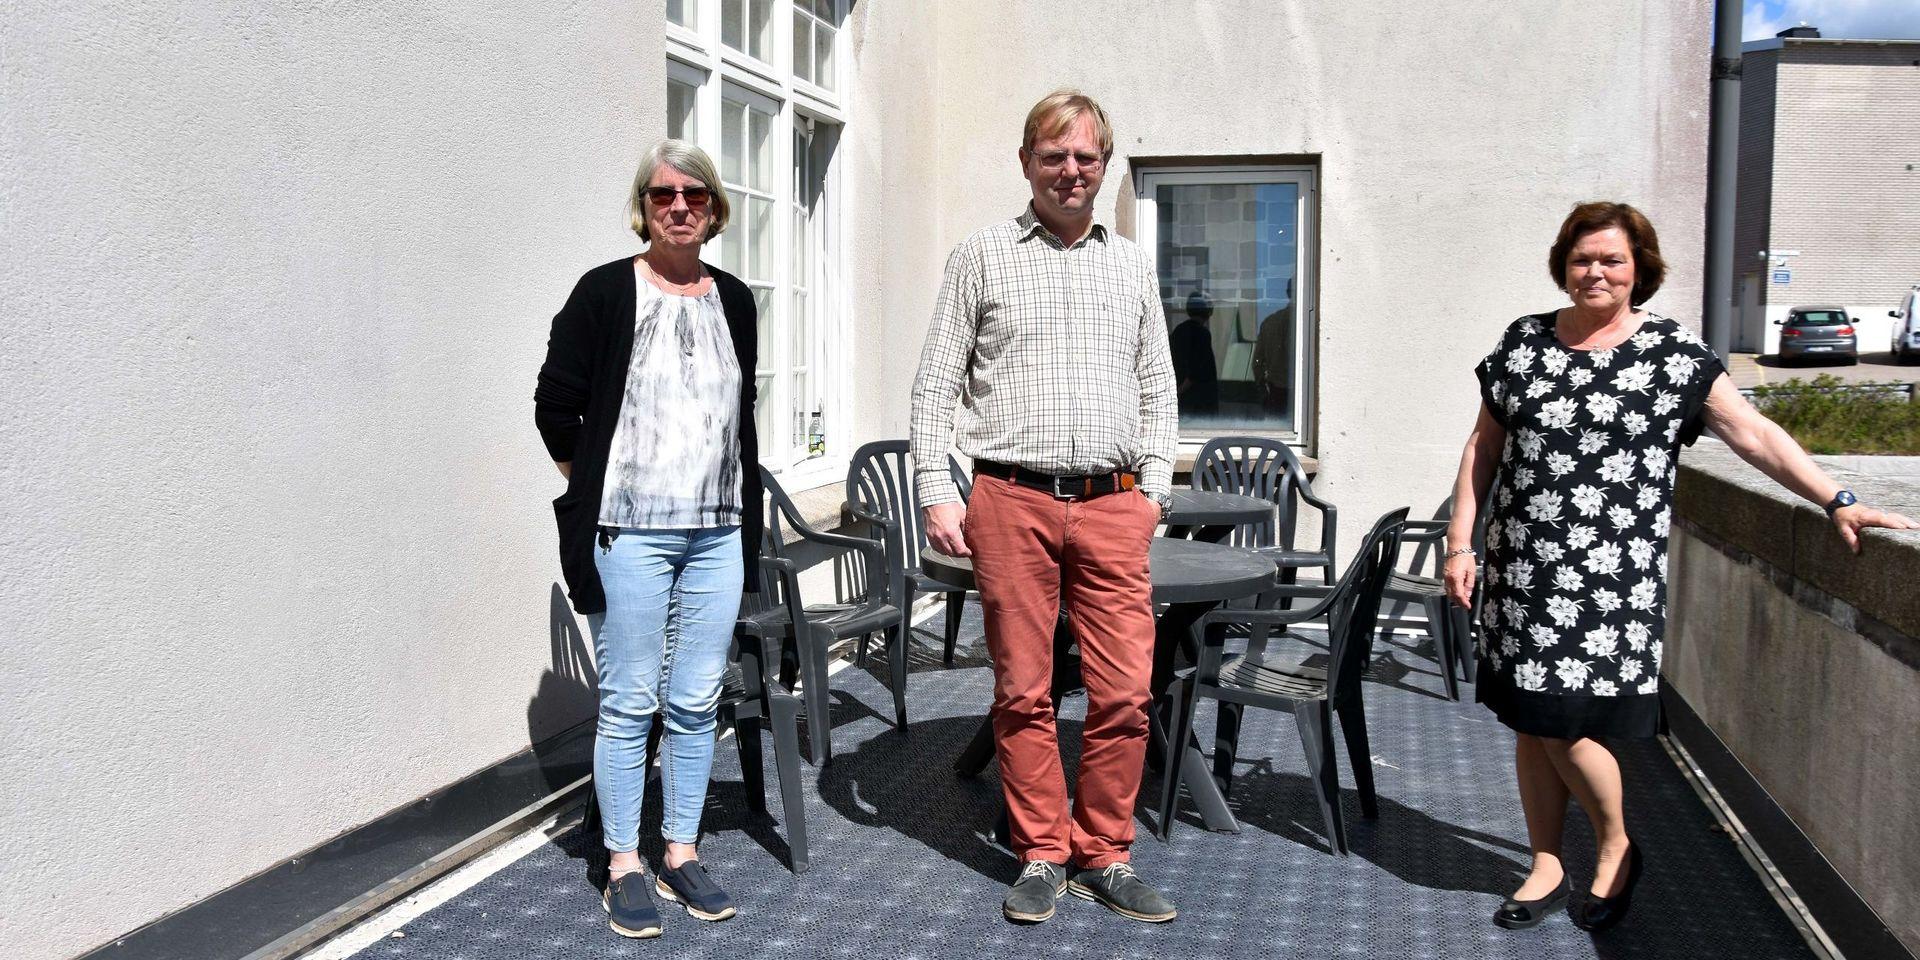 Lena Olsson, Joakim Möller och Monica Birgersson träffade Strömstads Tidning utanför Stadshuset på tisdagen.